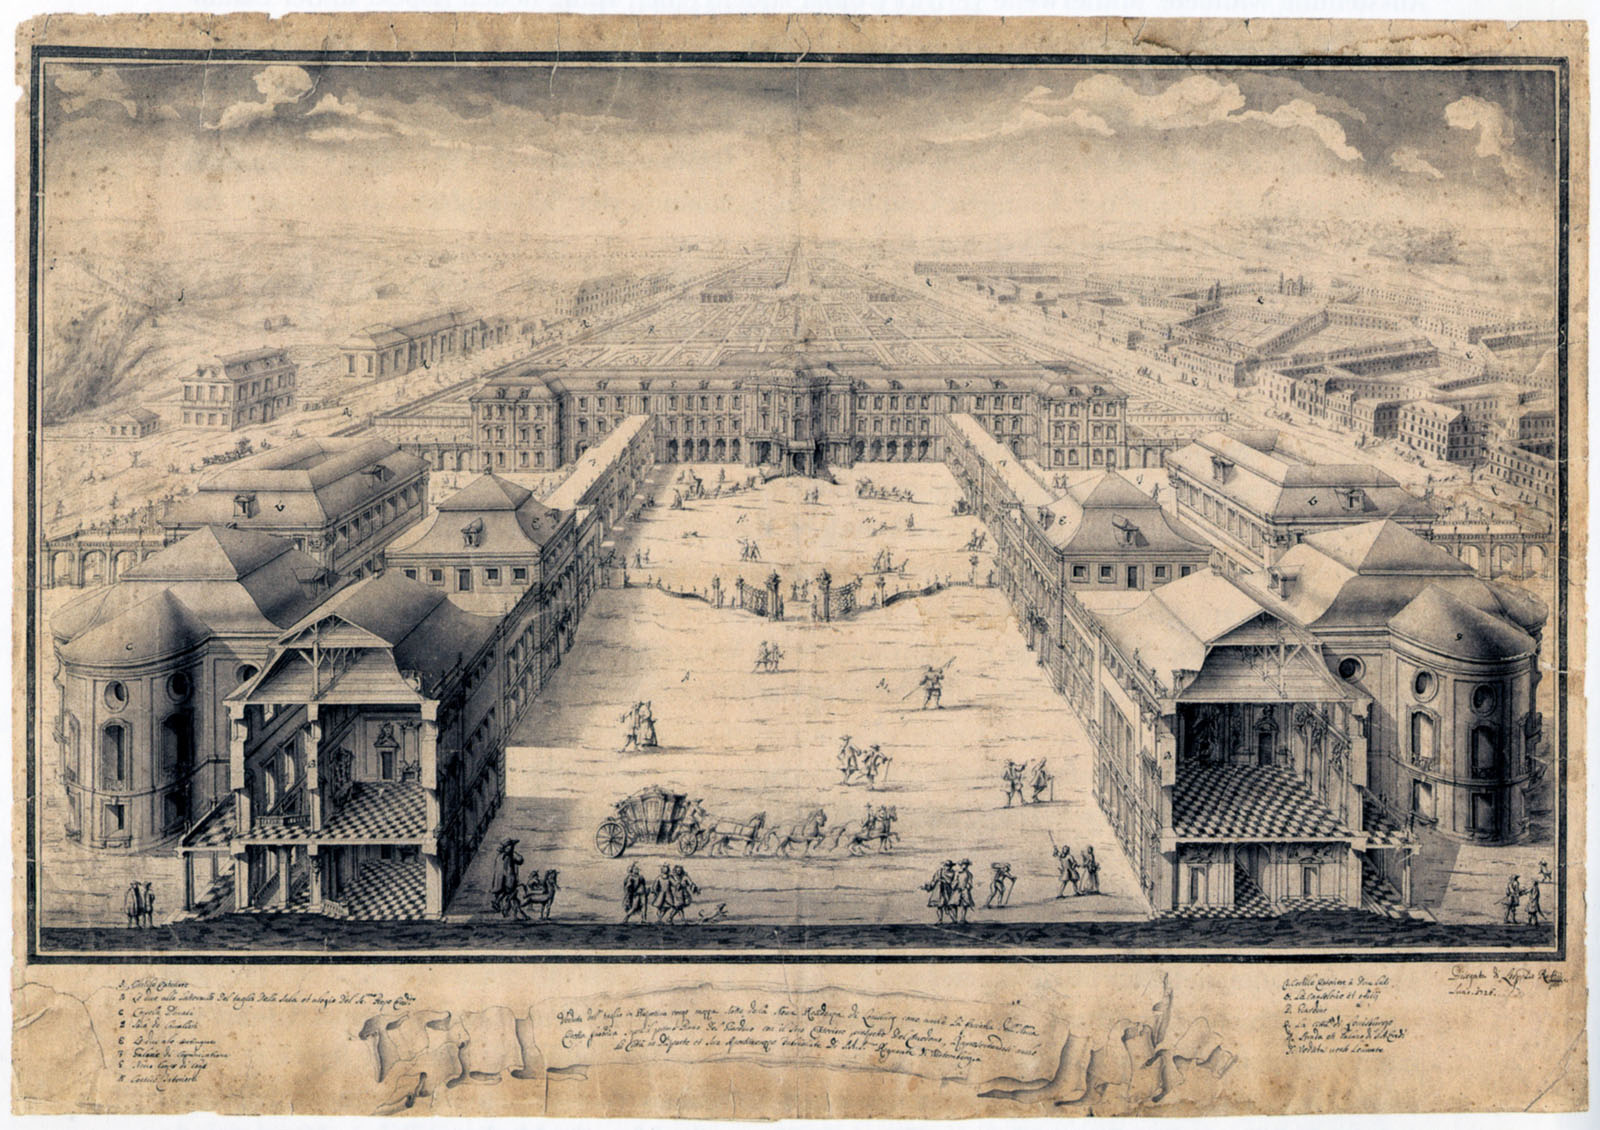 Leopoldo Retti, Ehrenhof des Neuen Corps de logis von Schloss Ludwigsburg mit aufgeschnittenen Flügelbauten der älteren Bauteile, 1726